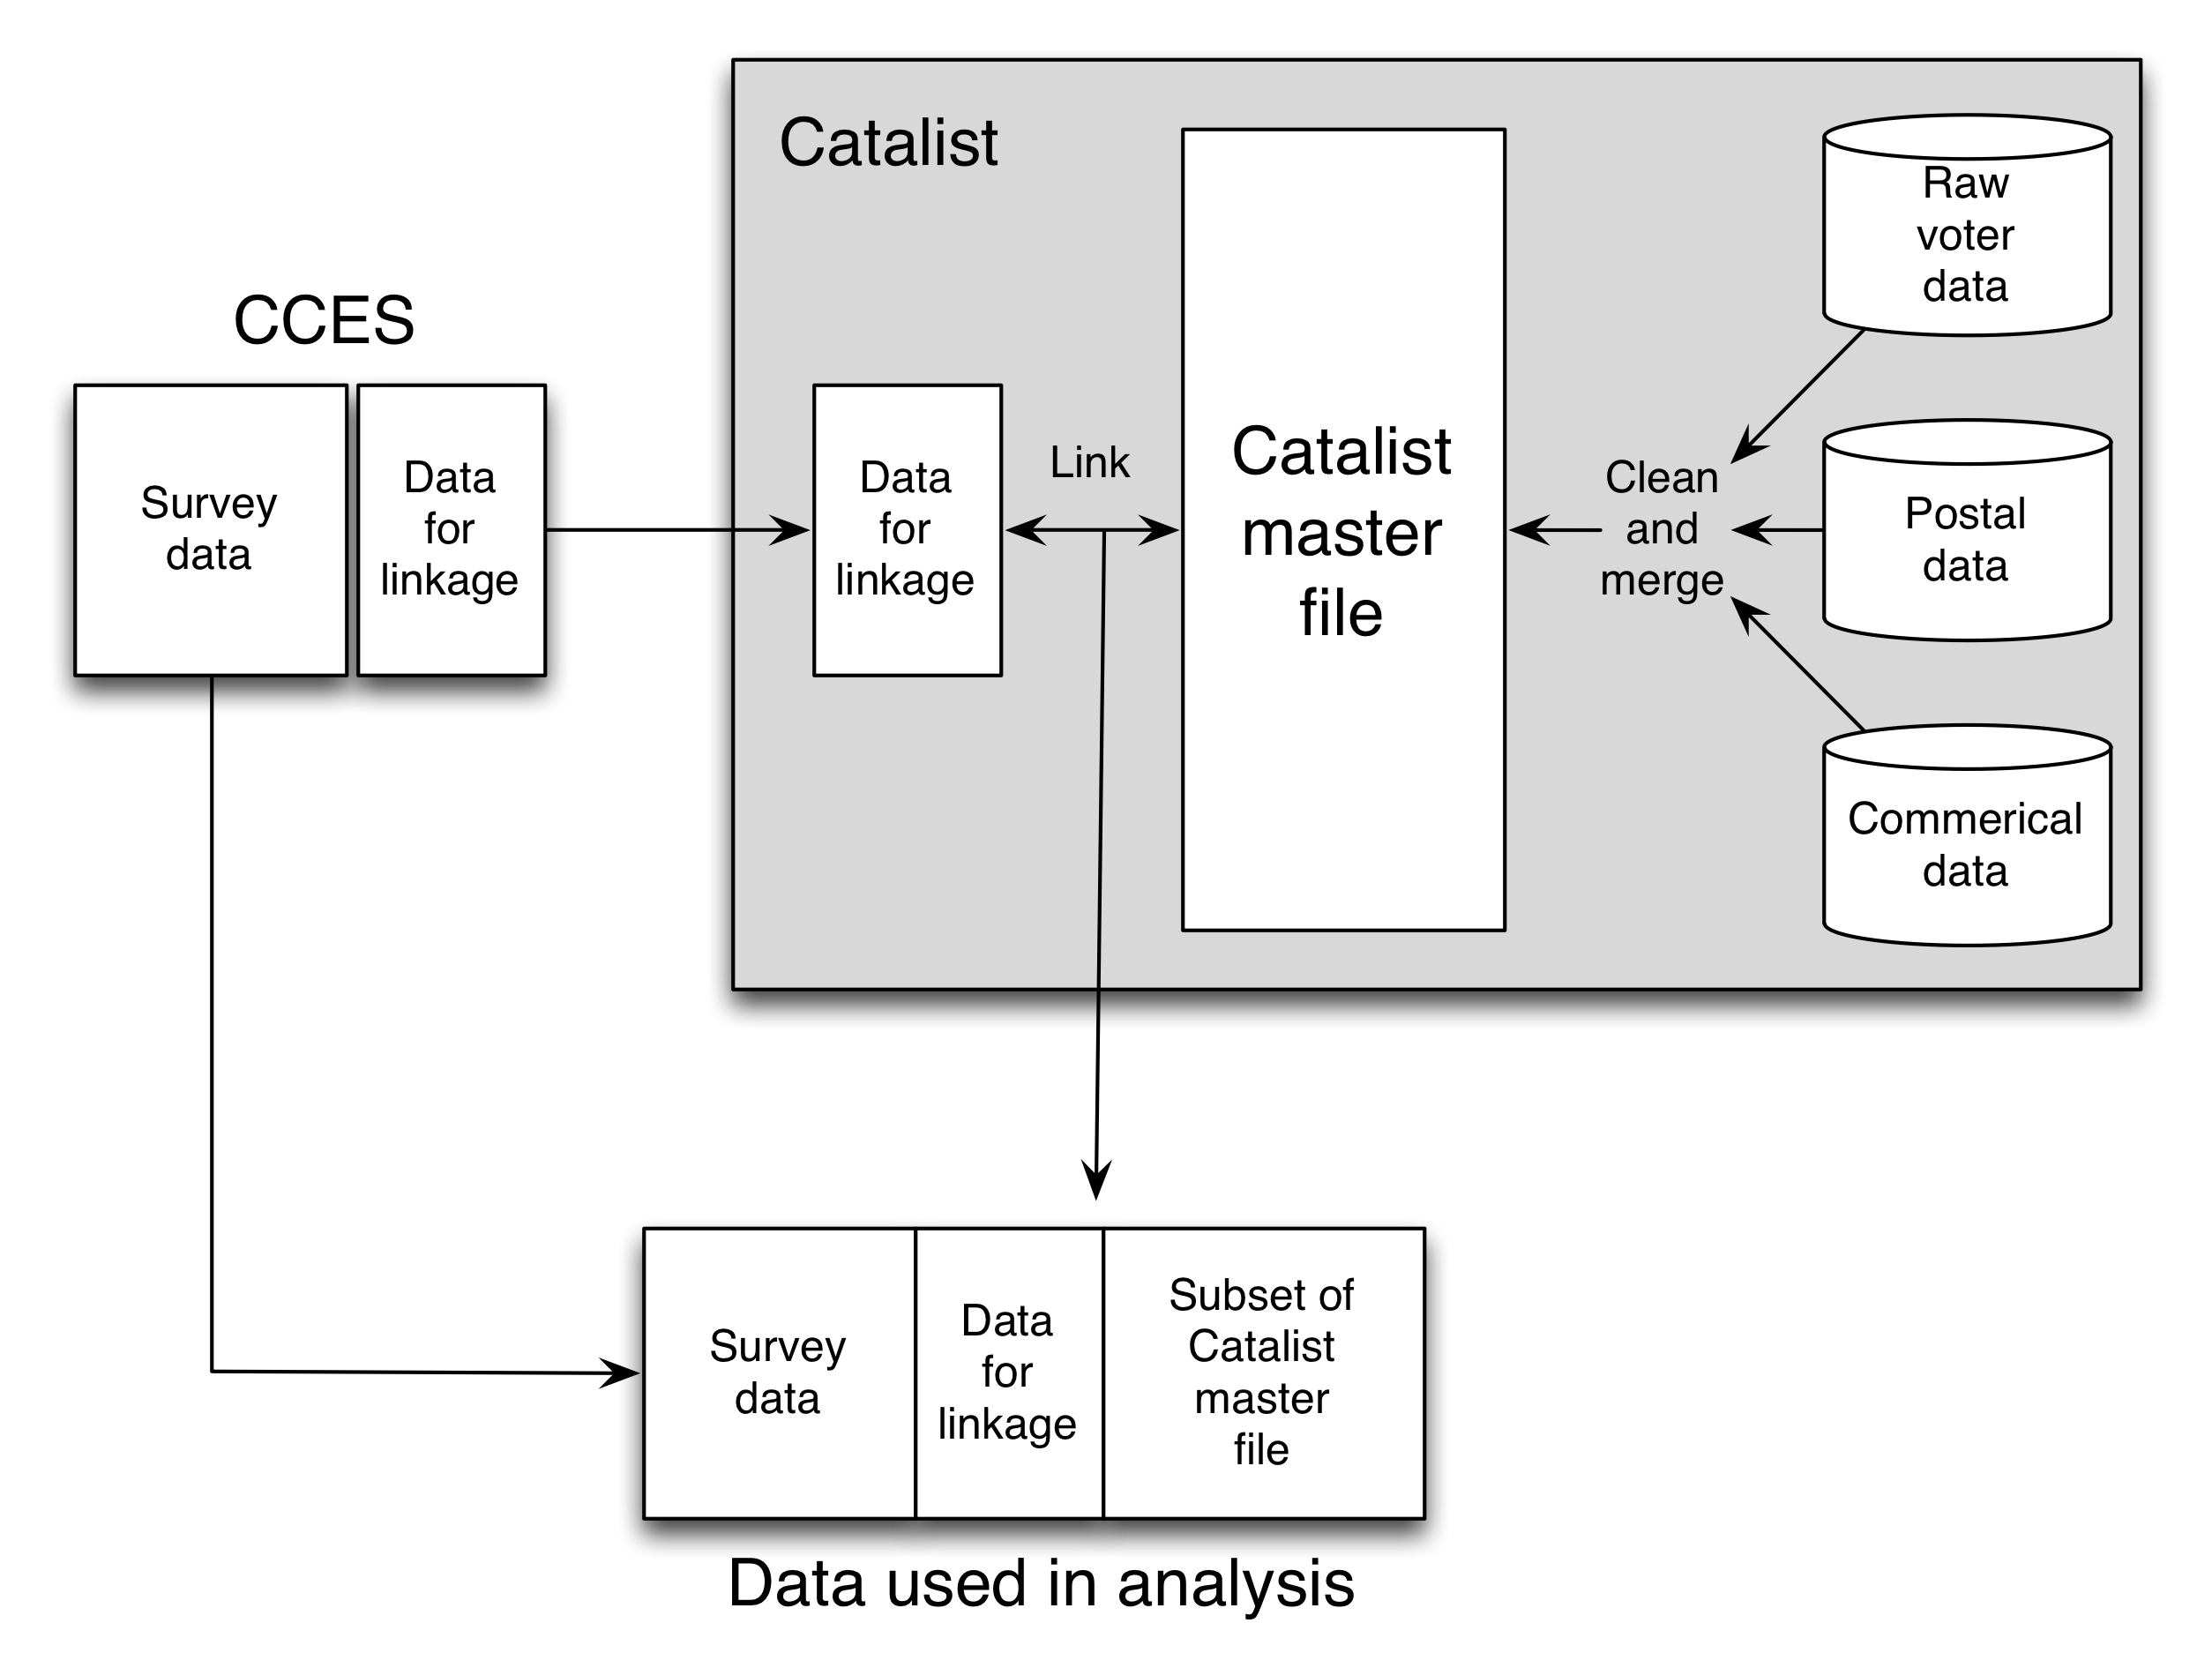 Kuva 3.13: Ansolabeheren ja Hershin tutkimuksen kaavio (2012). Katalysaattori yhdistää ja harmonisoi tietoja monista eri lähteistä päädatatiedoston luomiseksi. Tämä sulautumisprosessi, huolimatta siitä, kuinka varovainen, levittää virheitä alkuperäisissä tietolähteissä ja tuo uusia virheitä. Toinen virheiden lähde on tallennetun datan ja master-datatiedoston välinen tietoliikenneyhteys. Jos jokaisella henkilöllä oli vakaa, yksilöllinen tunniste molemmissa tietolähteissä, niin linkitys olisi vähäpätöinen. Katalistin oli kuitenkin tehtävä linkitys käyttämällä epätäydellisiä tunnisteita, tässä tapauksessa nimi, sukupuoli, syntymävuosi ja kotiosoite. Valitettavasti monissa tapauksissa voi olla epätäydellisiä tai epätarkkoja tietoja; Homer Simpsonin äänestäjä voi esiintyä Homer Jay Simpson, Homie J Simpson tai jopa Homer Sampsin. Huolimatta mahdollisista virheistä katalyyttisen master-datan tiedoissa ja rekisteritietojen virheissä Ansolabehere ja Hersh pystyivät rakentamaan luotettavuutta arvioihinsa useiden erilaisten tarkastusten avulla.